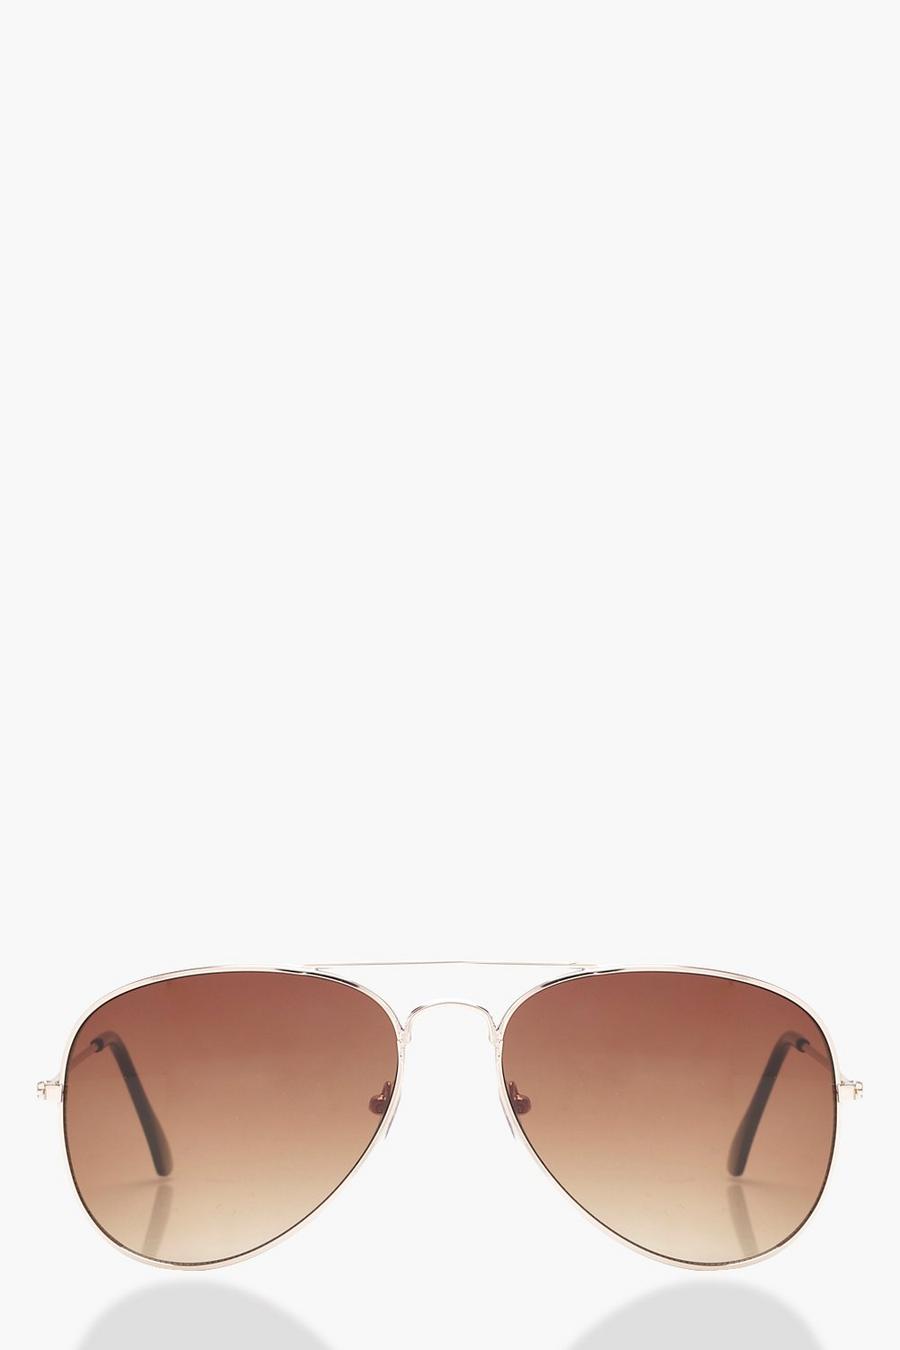 Silberne Pilotensonnenbrille, Braun brown